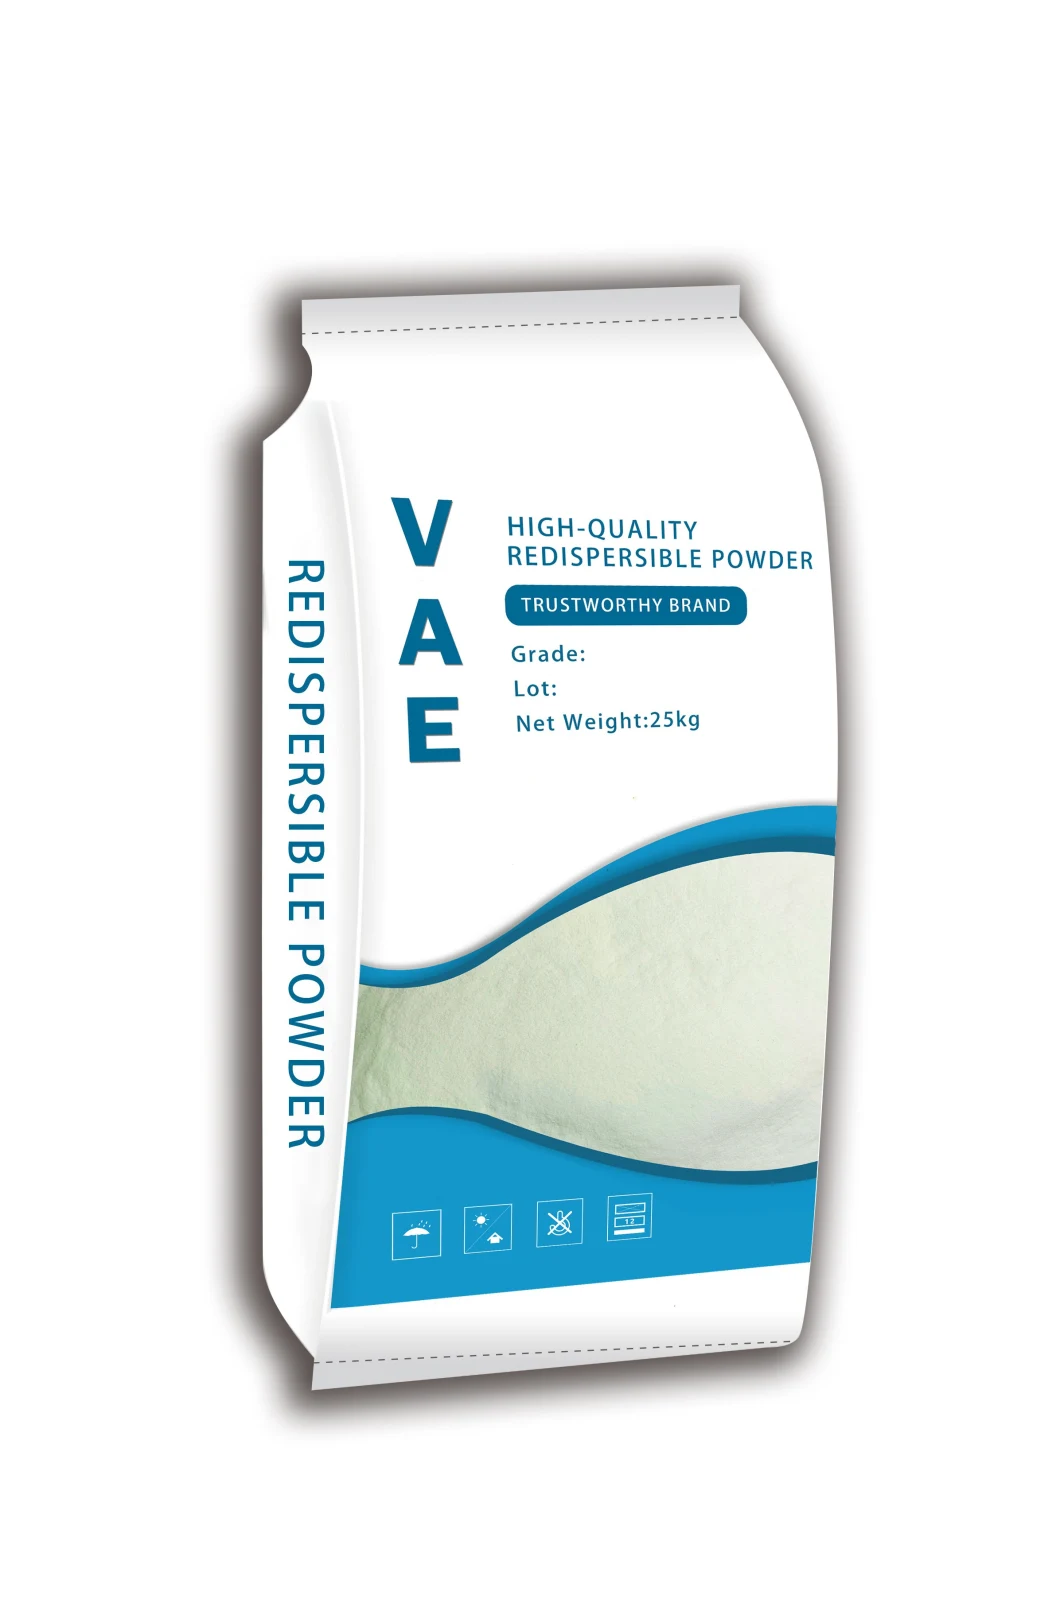 Water Based Adhesive Vae Rdp Manufacturer